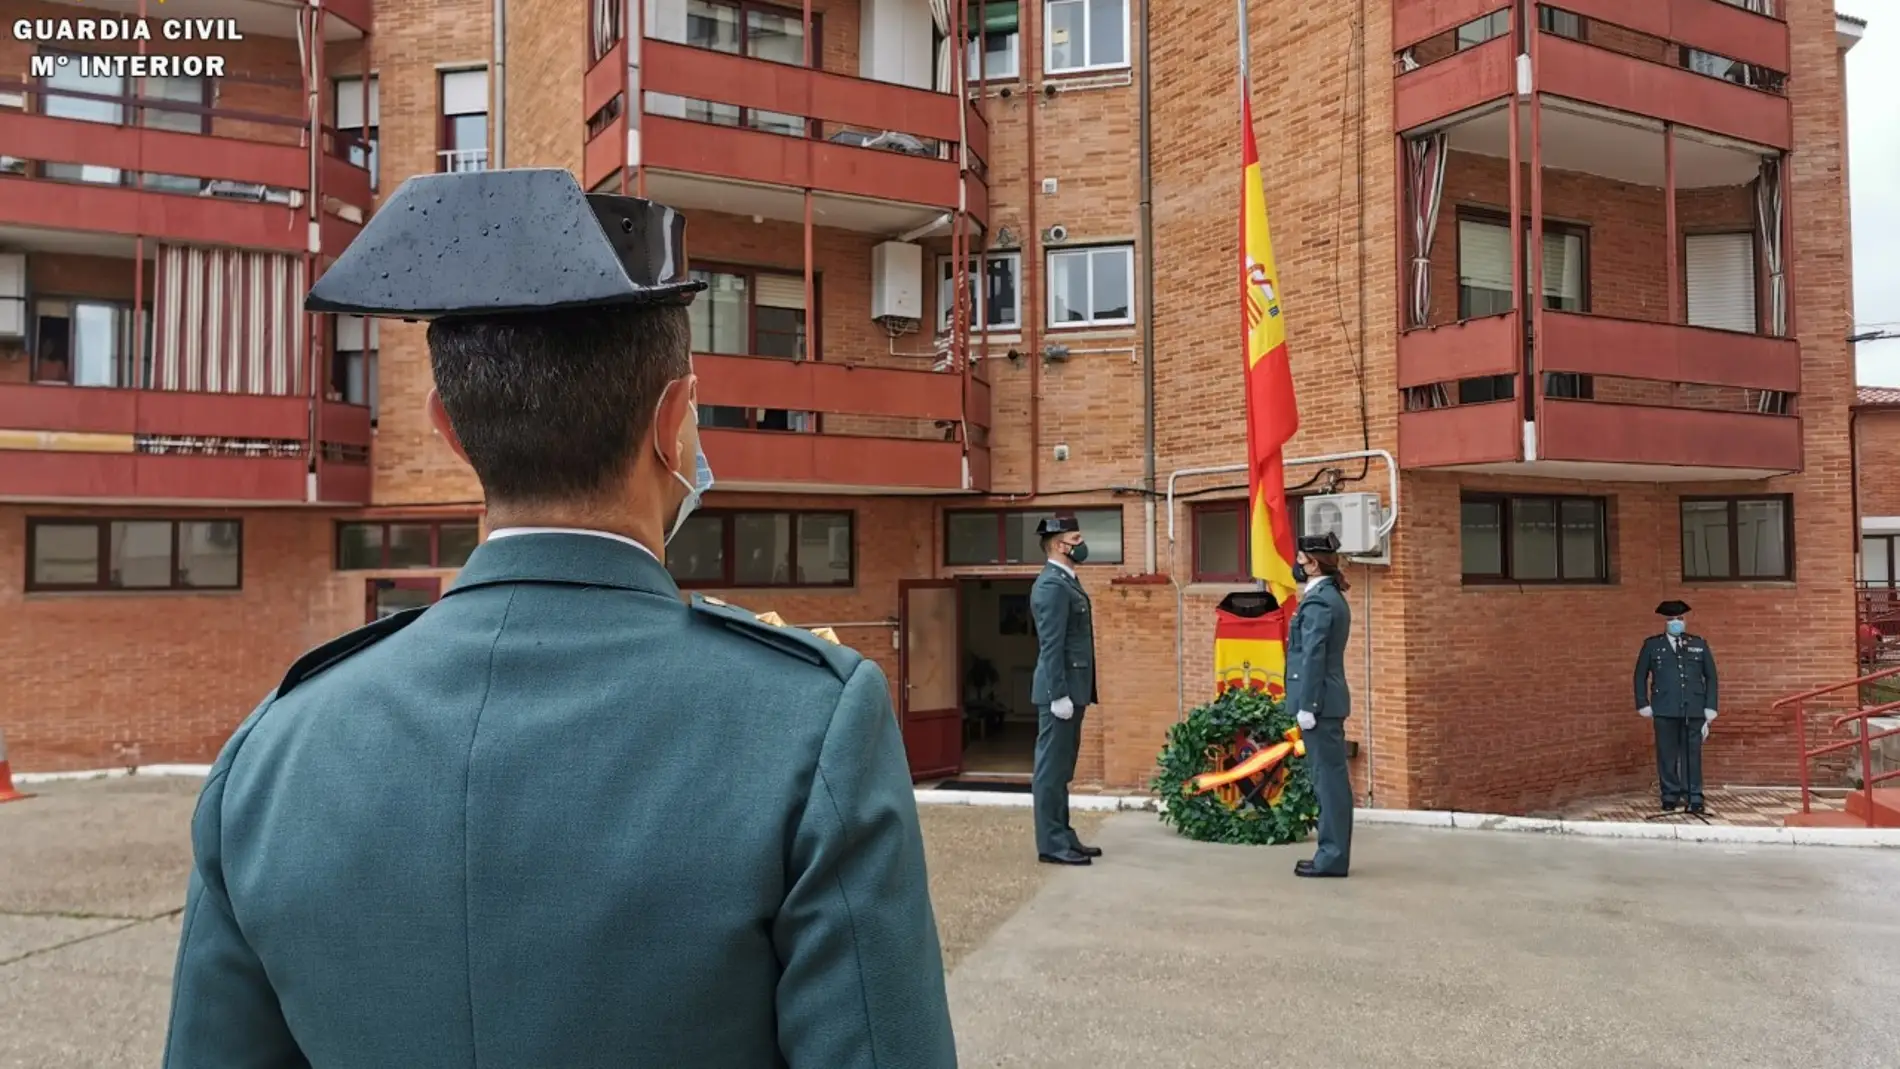 La Guardia Civil de Palencia conmemora el 177 aniversario de su fundación